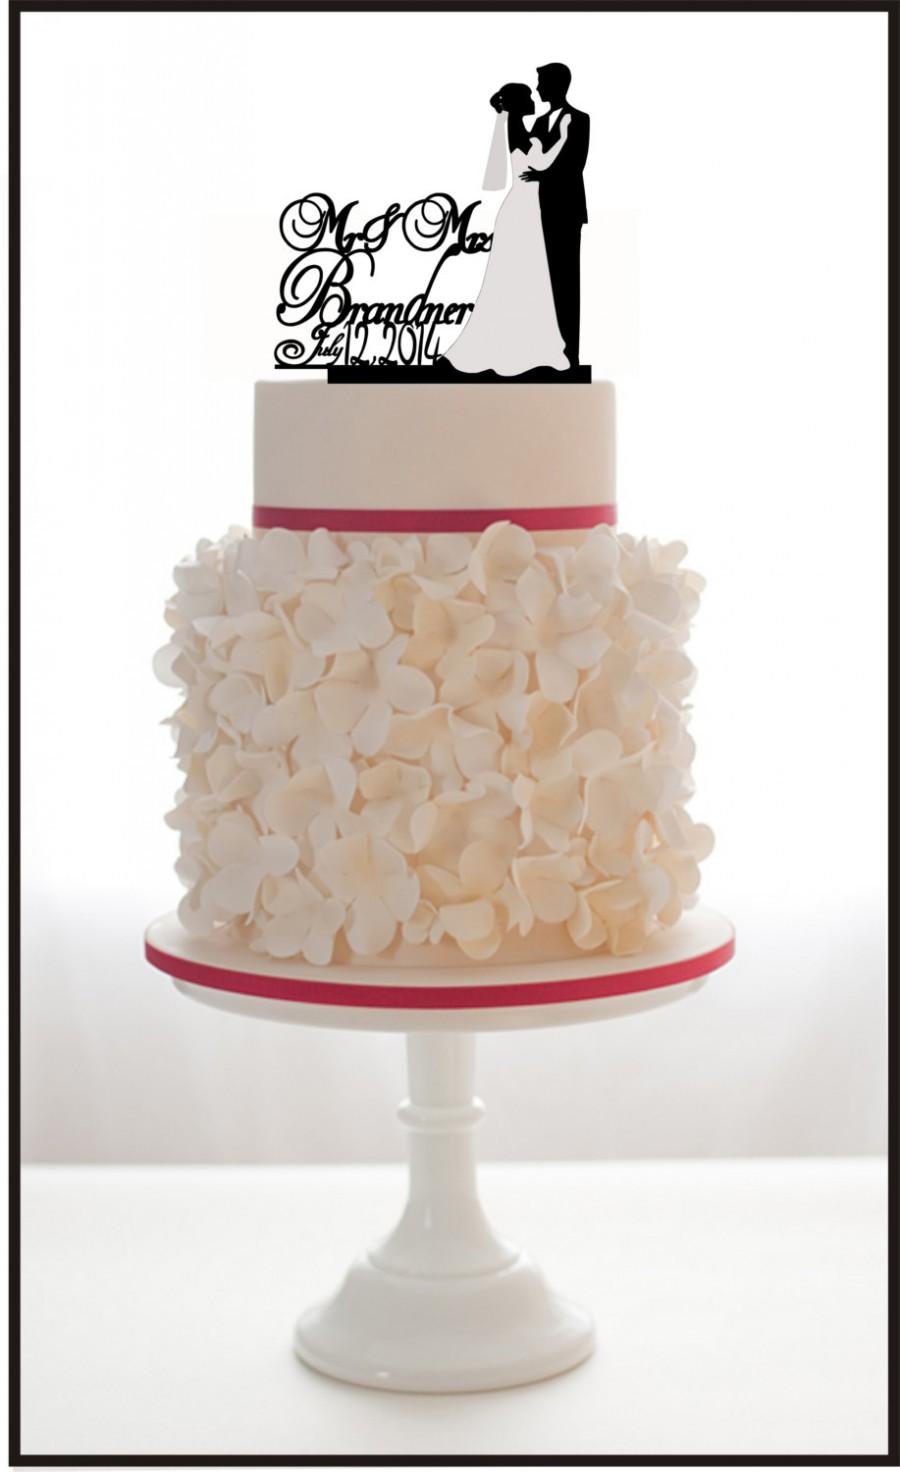 زفاف - Custom Wedding Cake Topper Monogram Personsalized Silhouette With Your Last Name, wedding date, choice of color and a FREE base for display